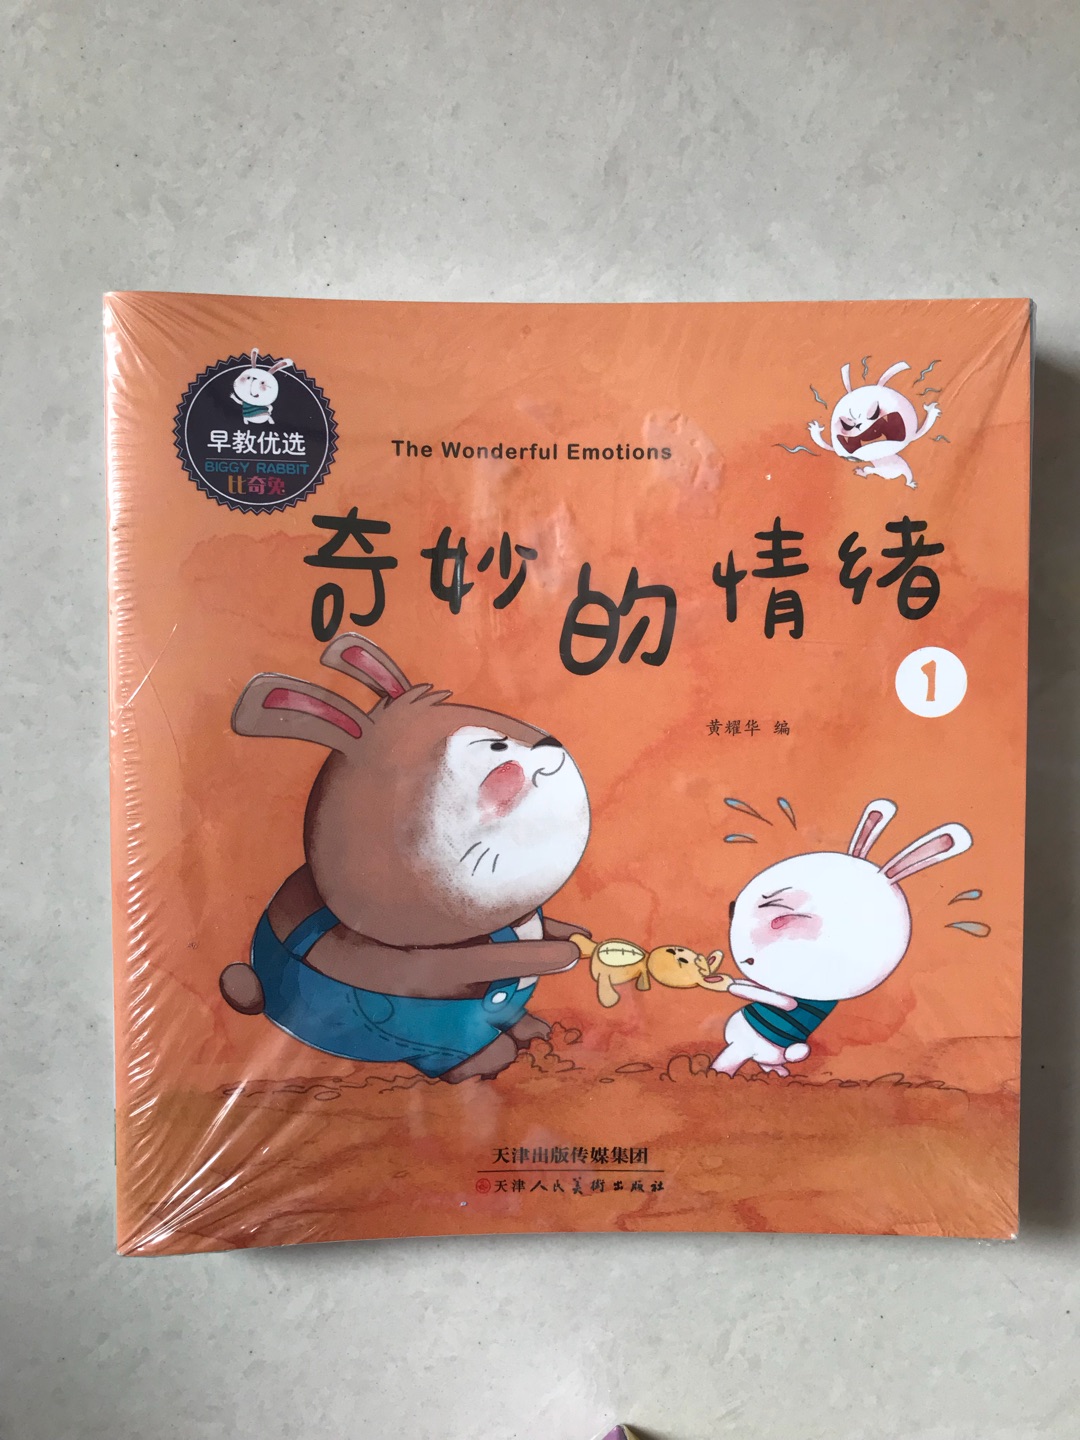 两岁的孩子，已经开始试着表达自己的情绪和感受，特意买来这套书，来引导他。